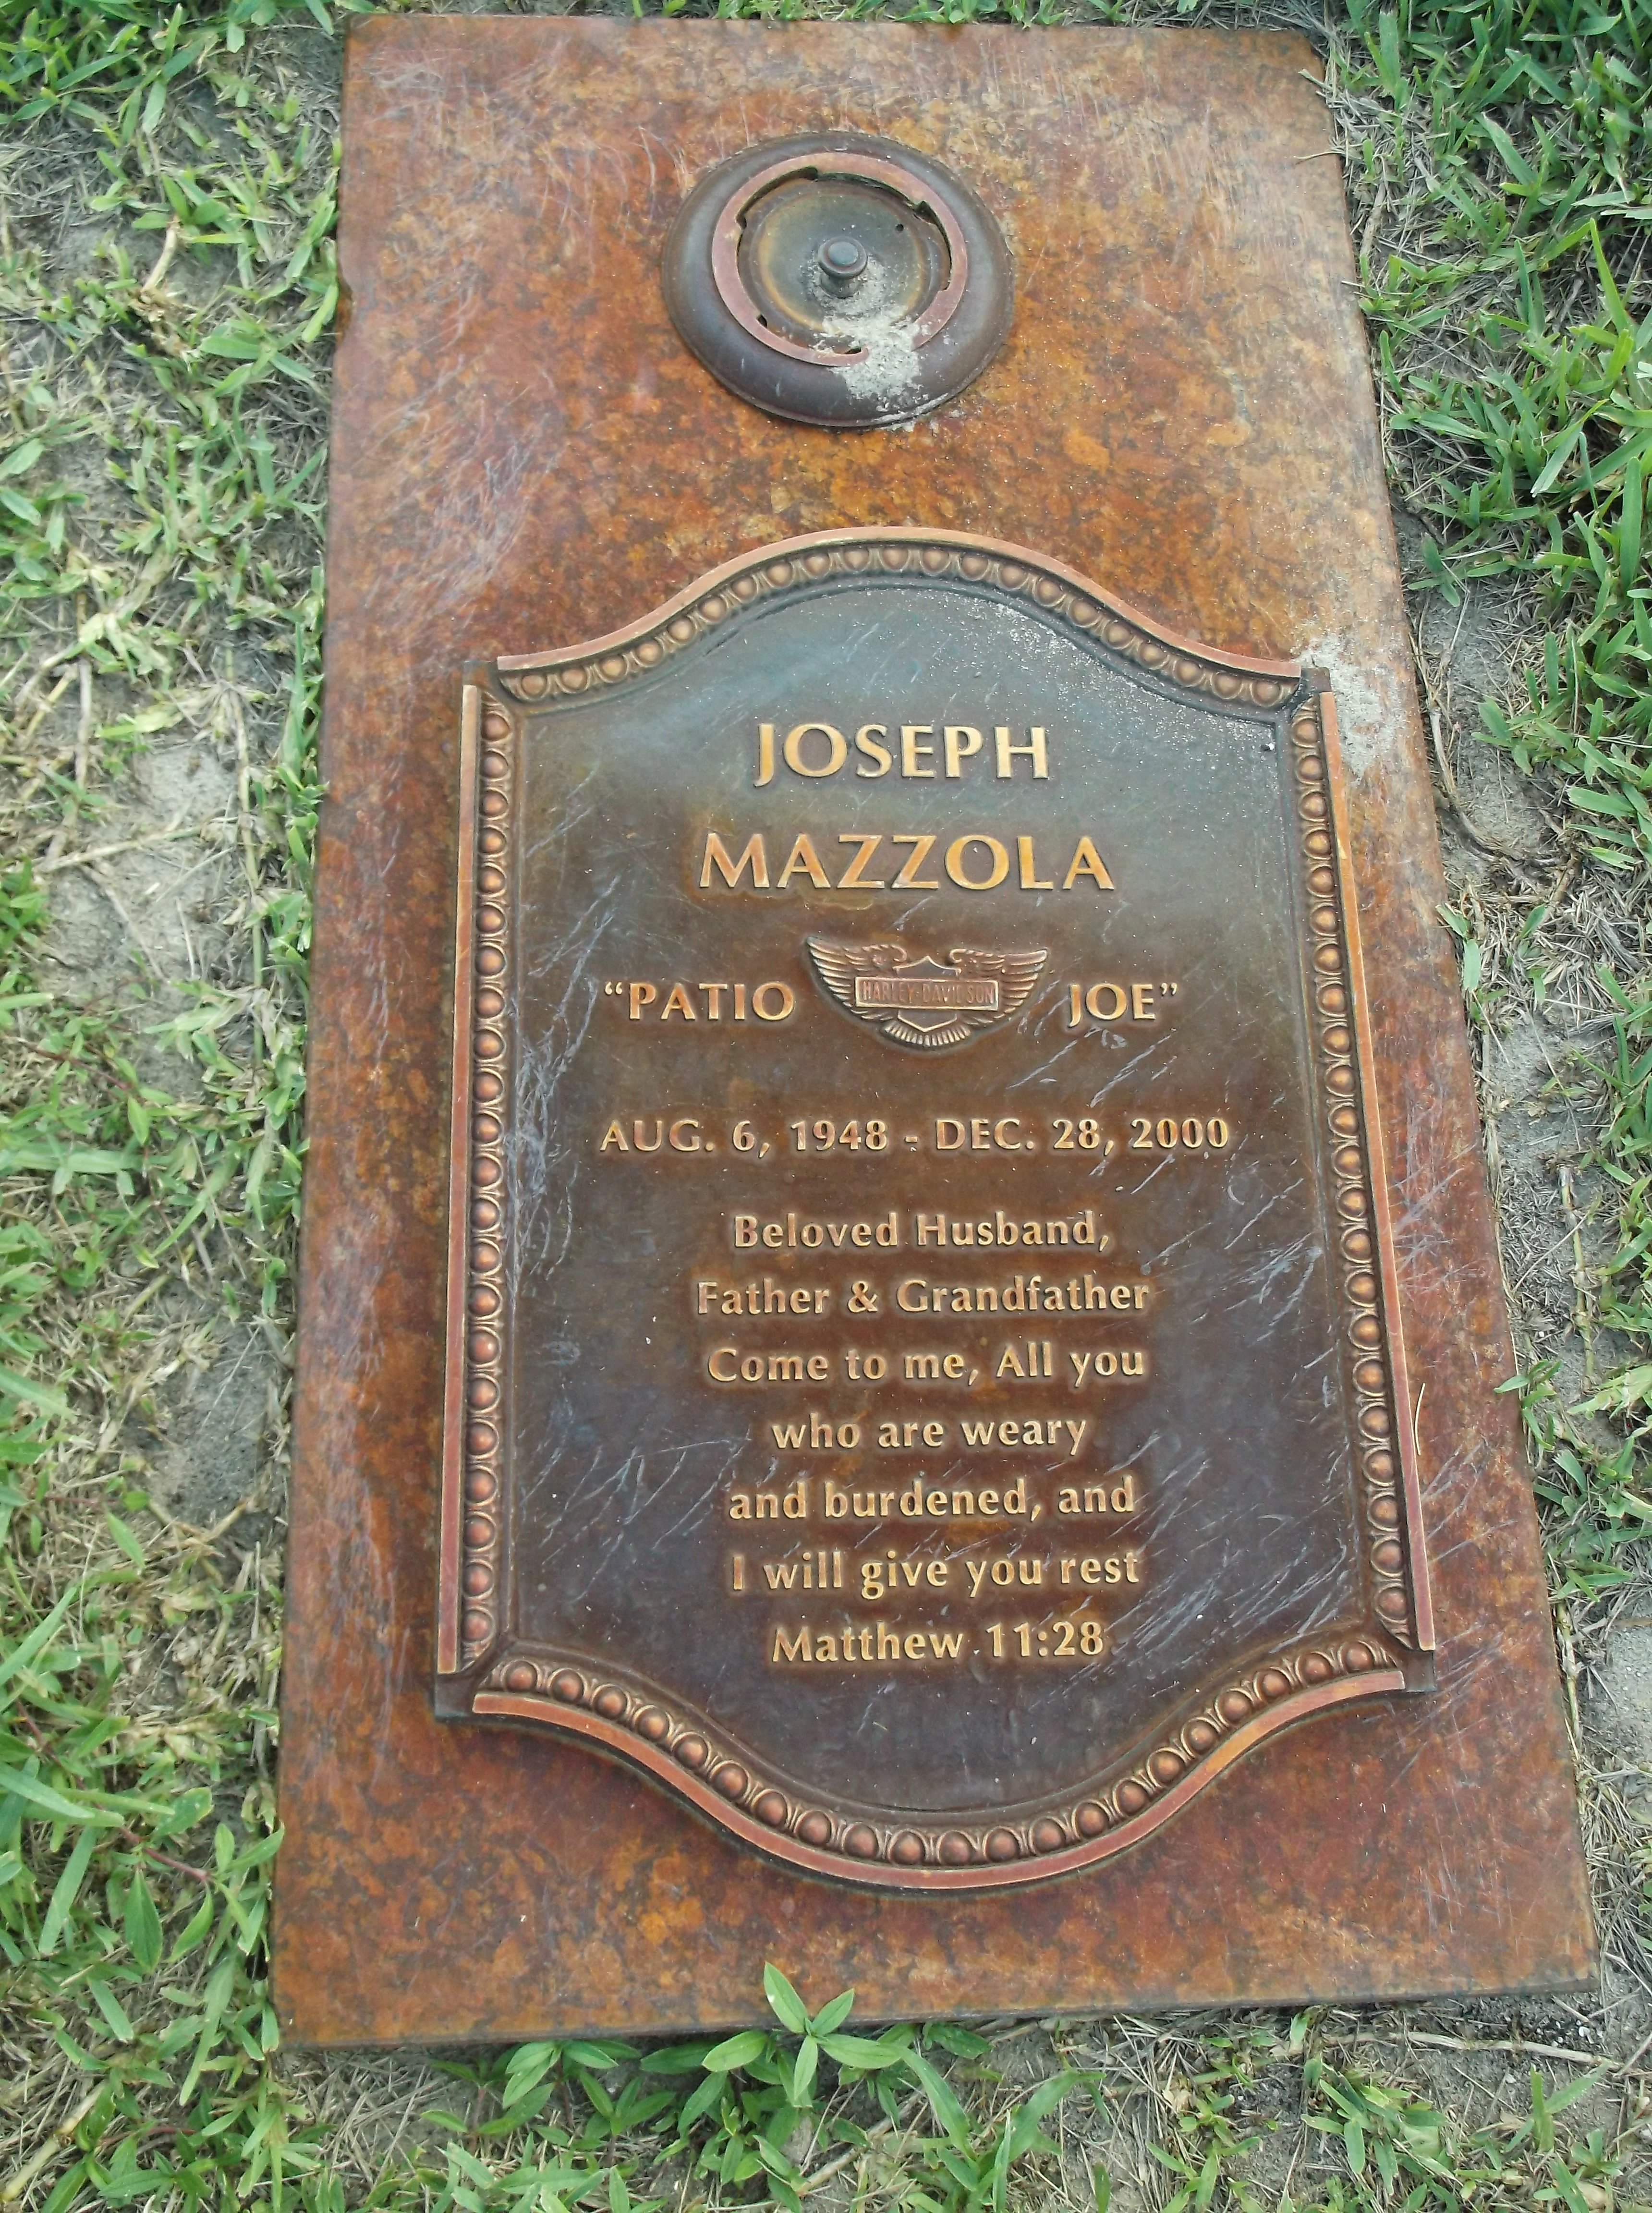 Joseph "Patio Joe" Mazzola